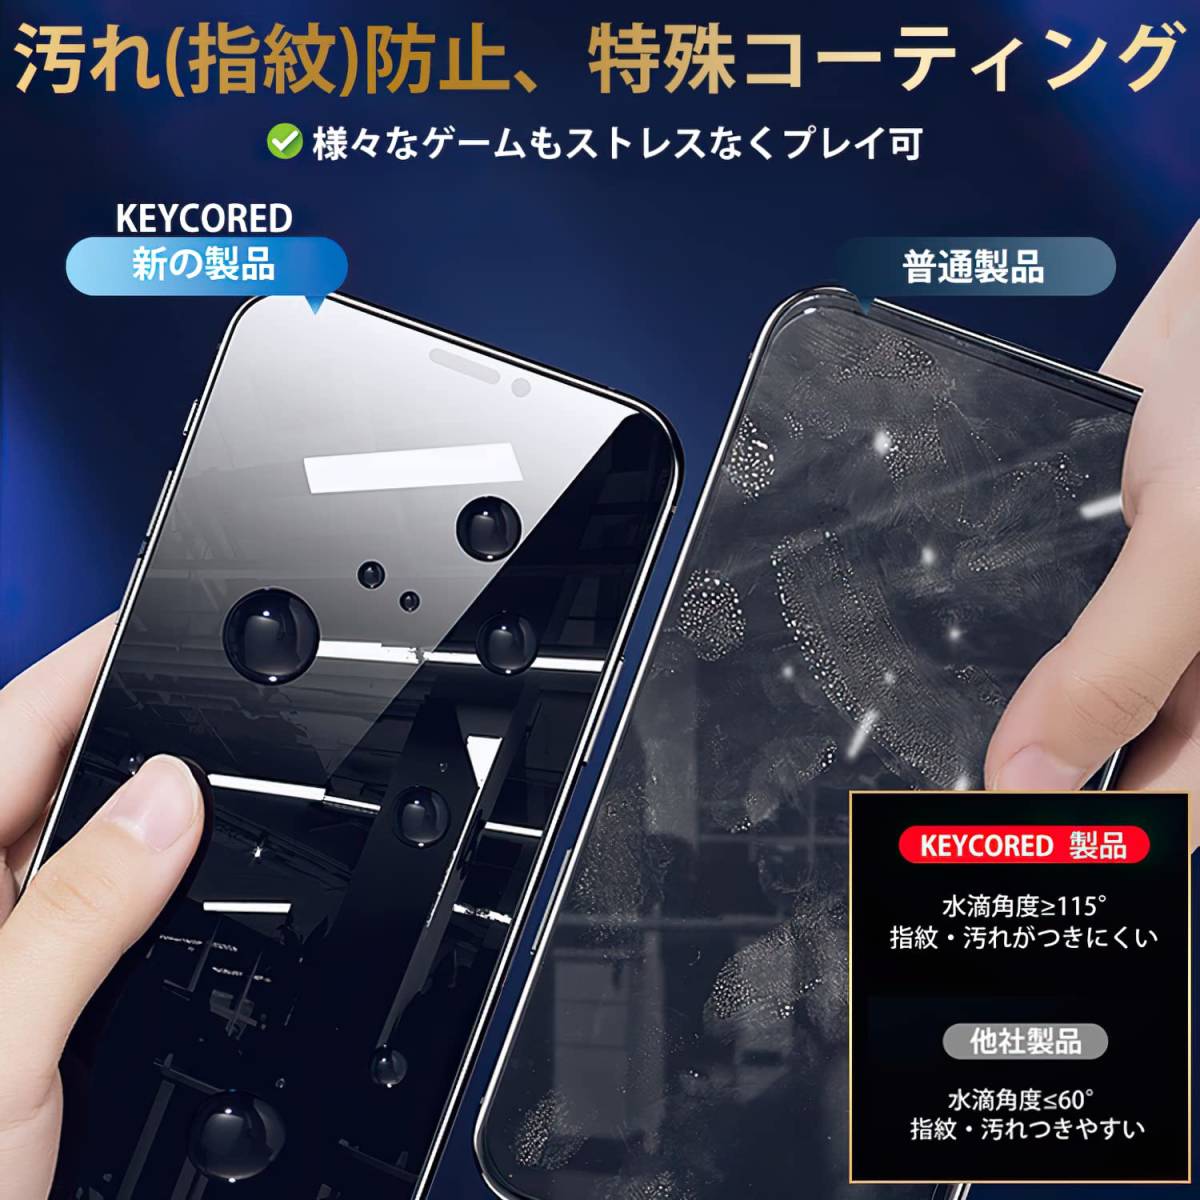 【在庫セール】日本旭硝子素材製 防塵 強化ガラス ガイド枠付き プライバシー保護 XS 液晶保護フィルム iPhone 硬度9H _画像5